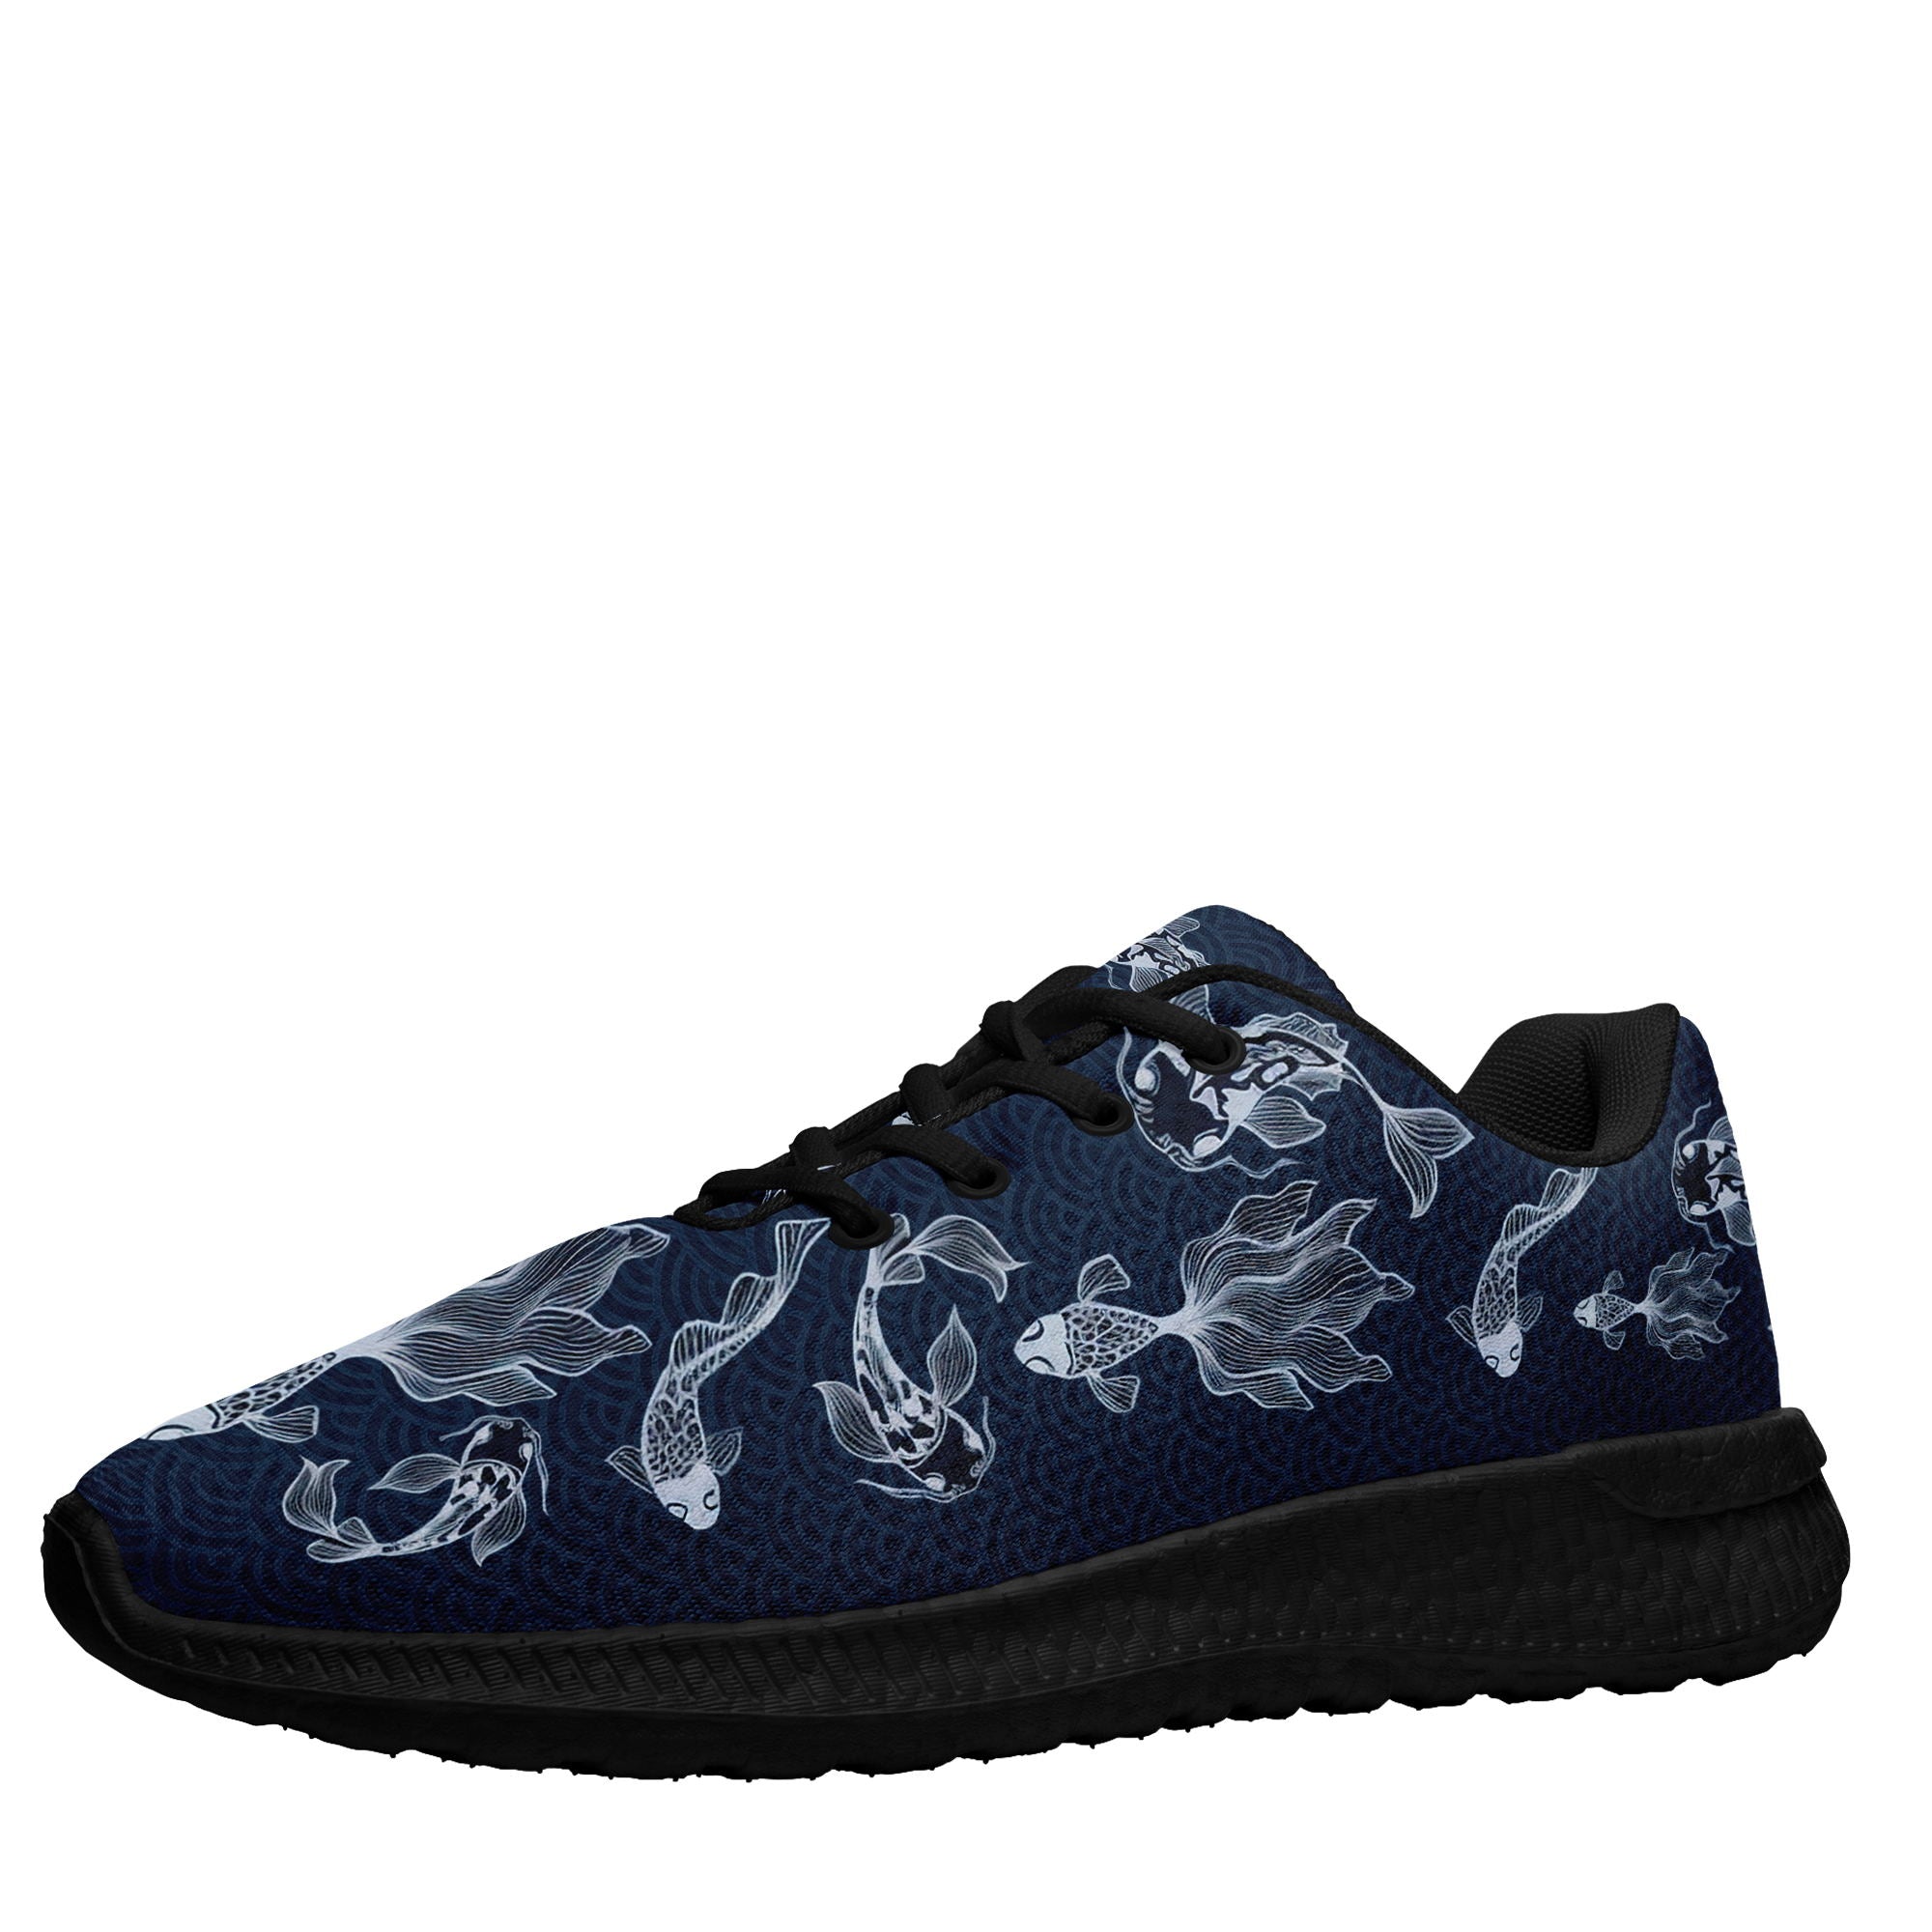 个性化设计定制打印LOGO时尚湄洲妈祖主题运动鞋藏蓝色黑底BLD2-2428009